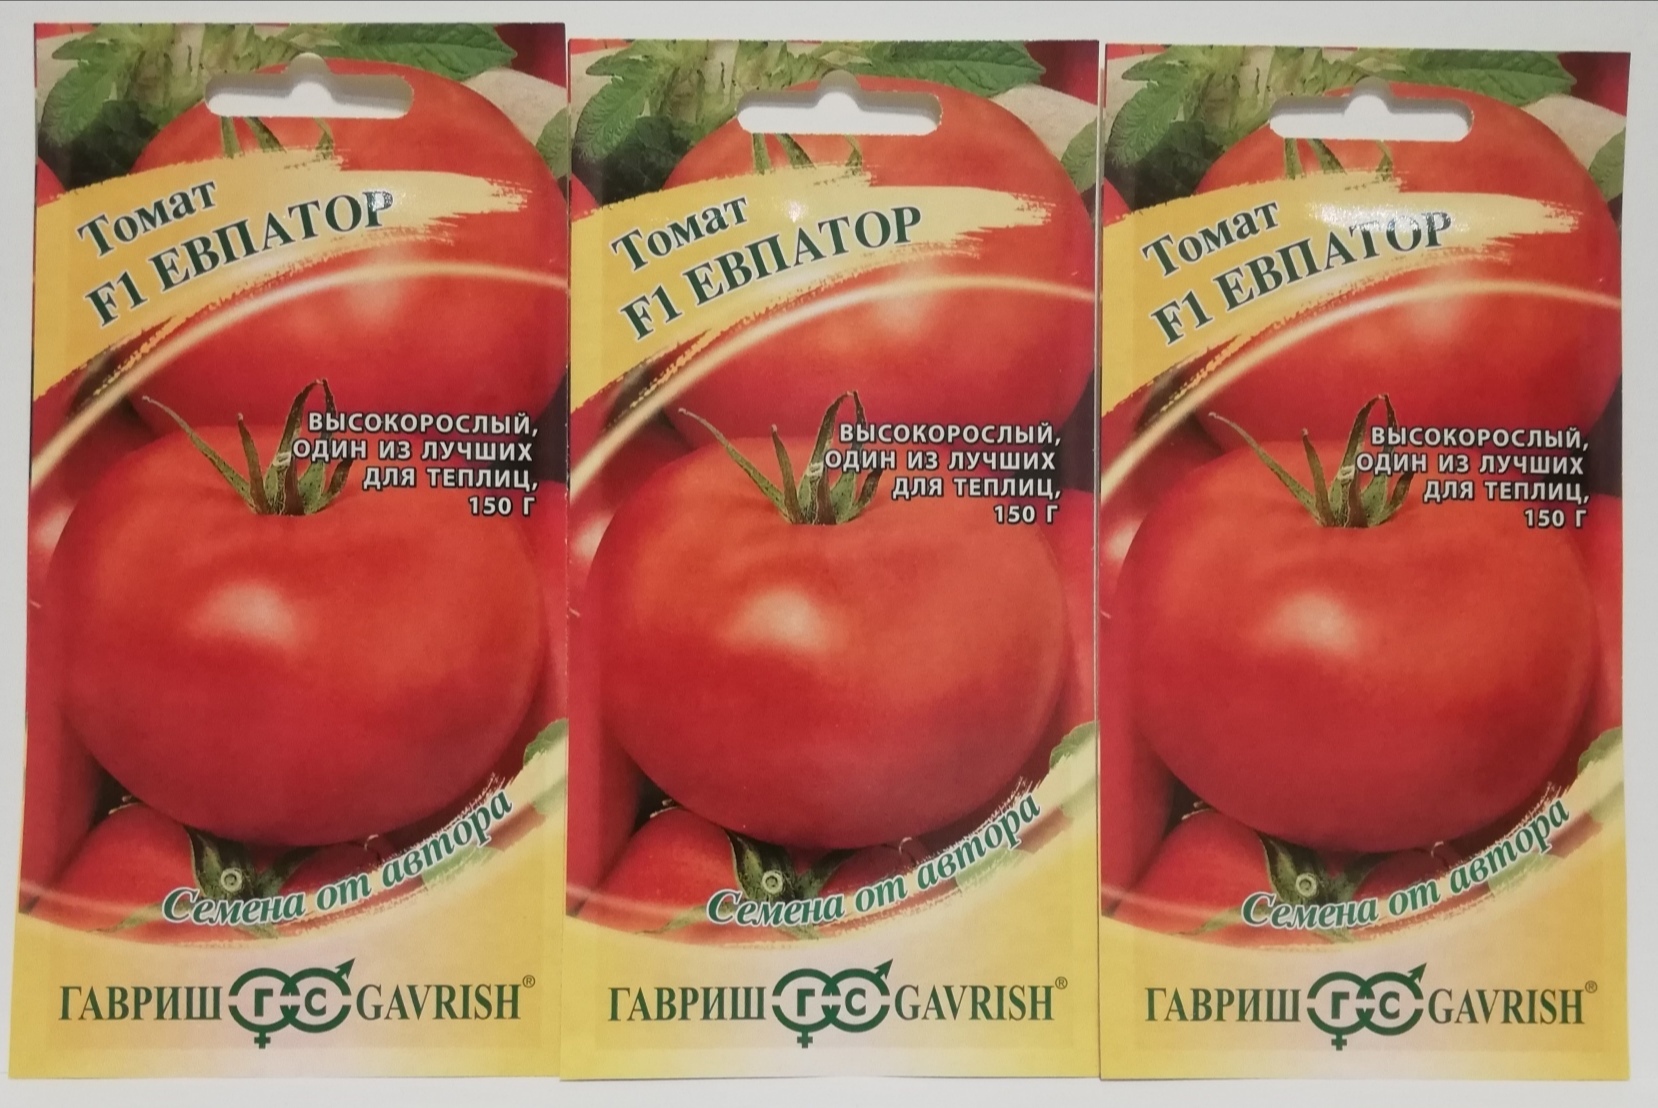 Семена томат Евпатор f1. Семена. Томат высокорослый "Евпатор f1". Семена Гавриш томат Евпатор f1.